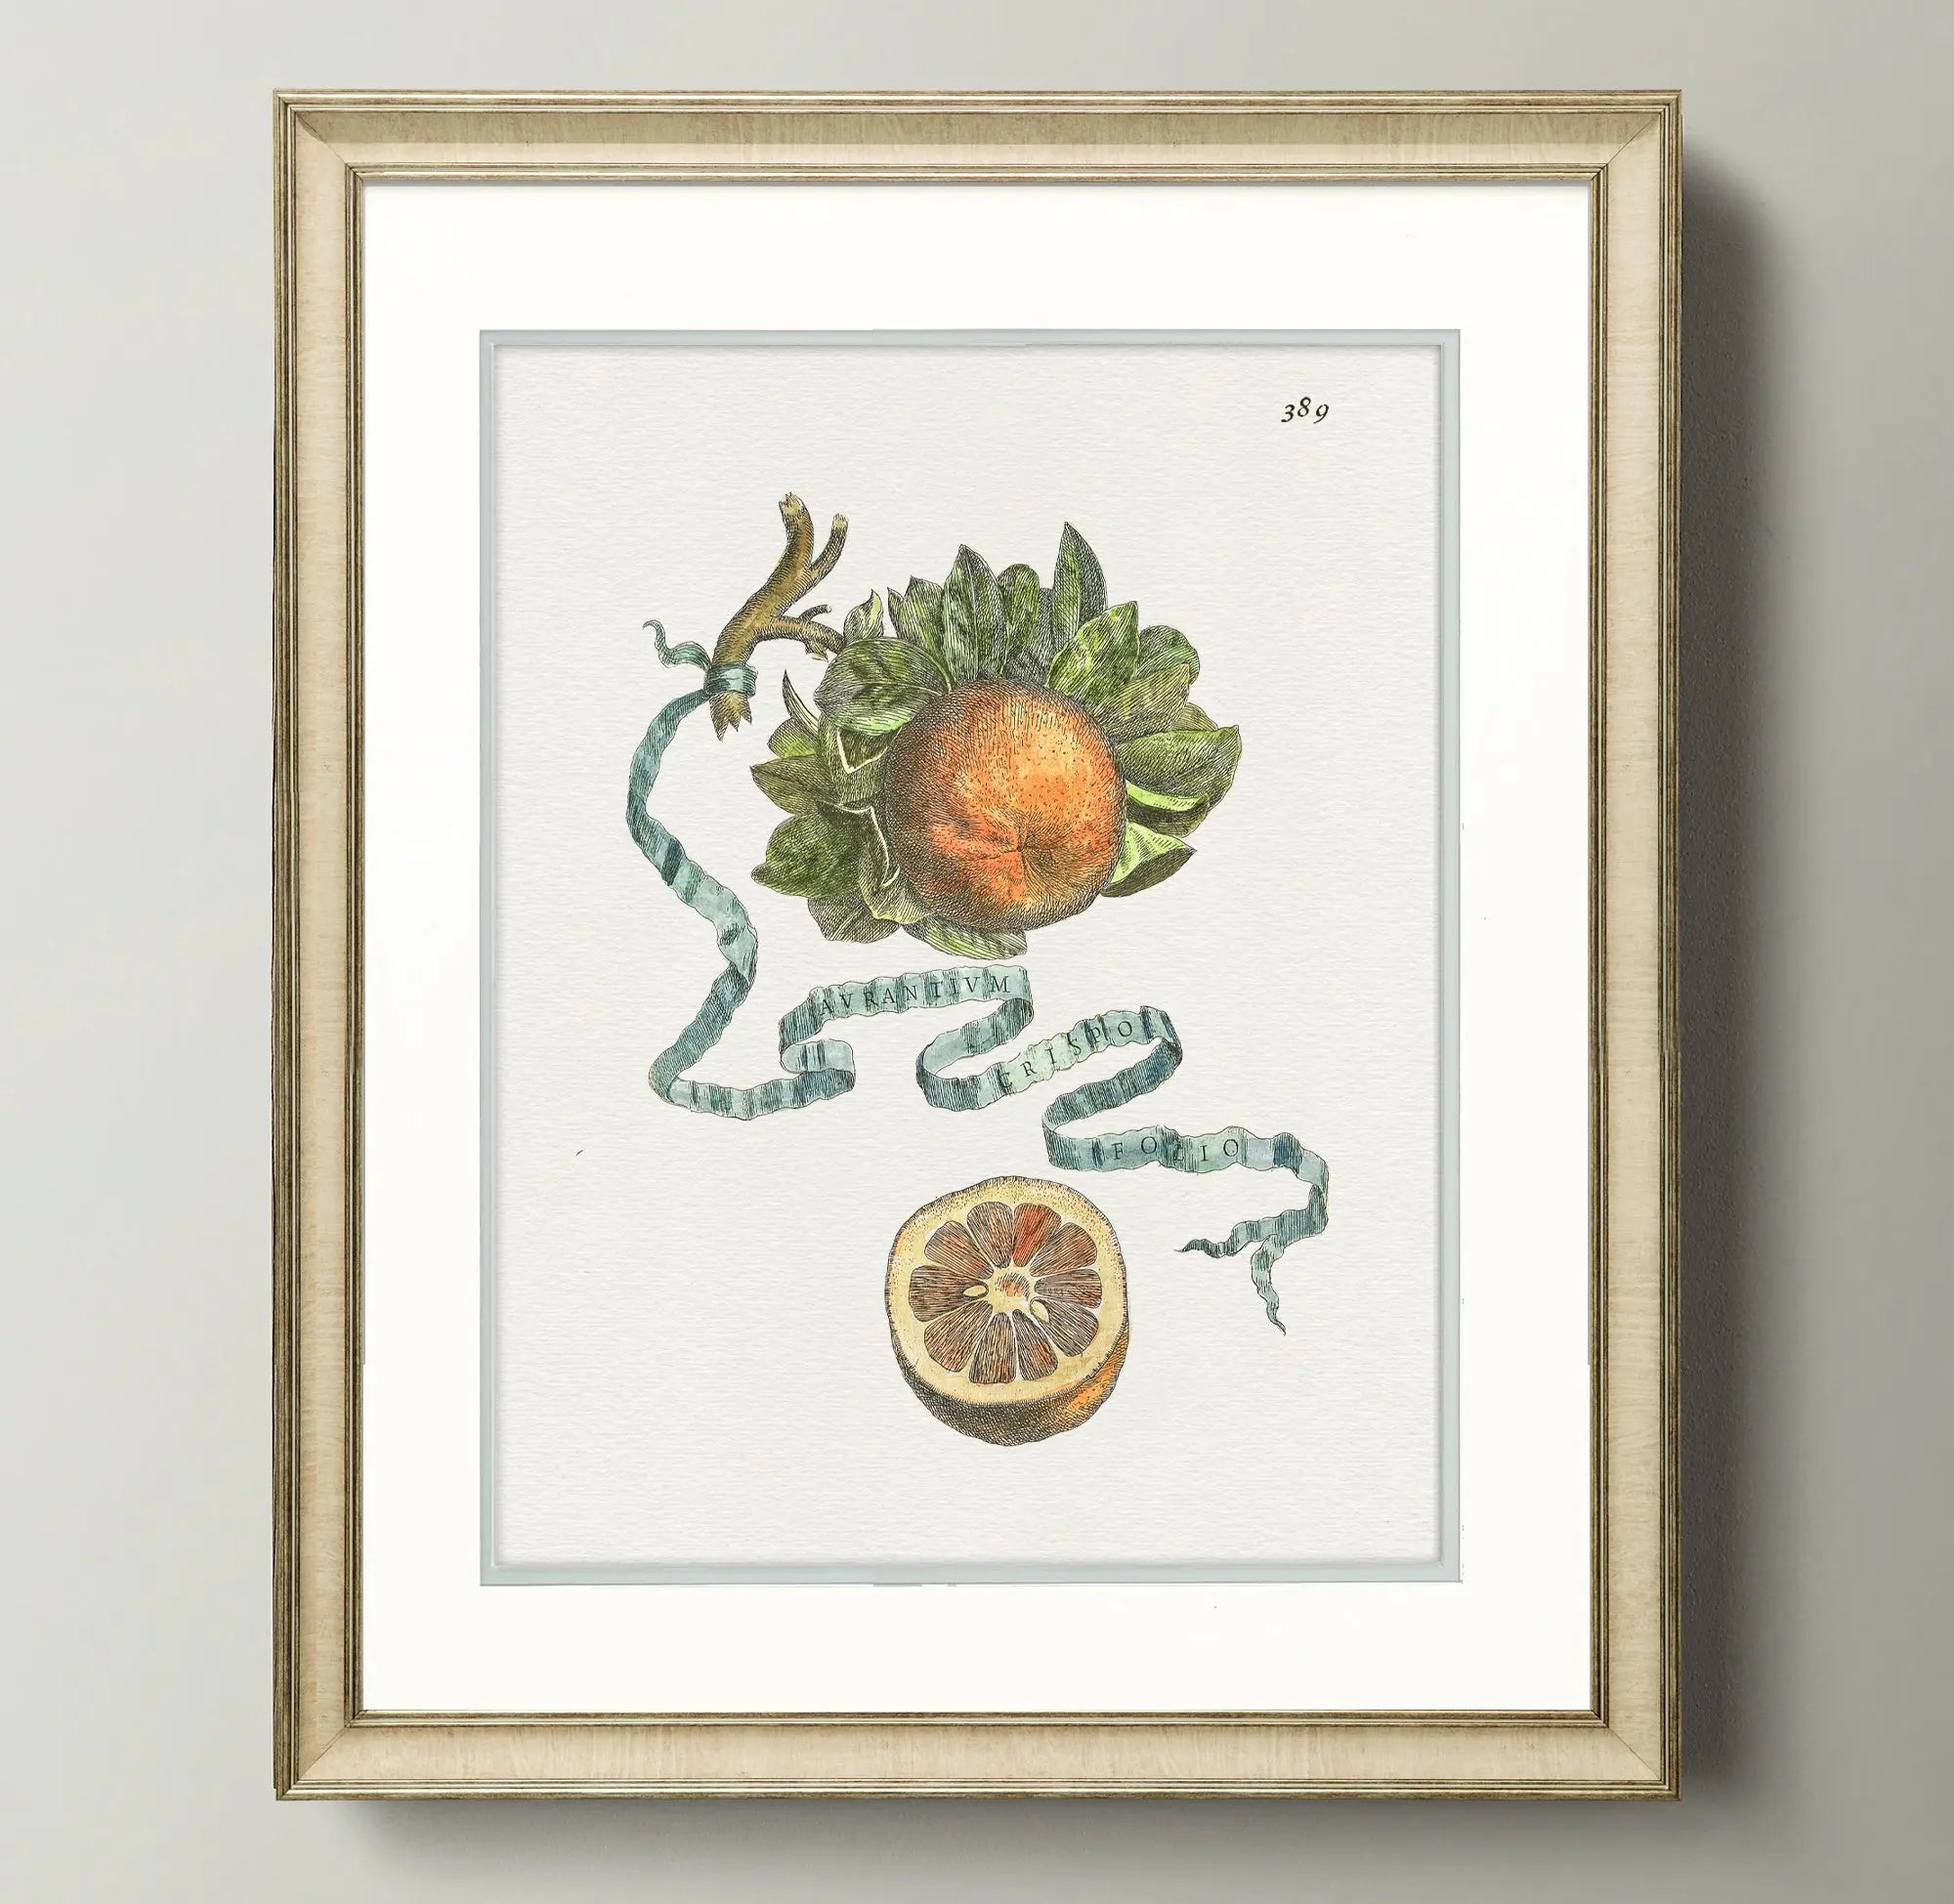 Citrus Botanicals - Orange - Plate 389